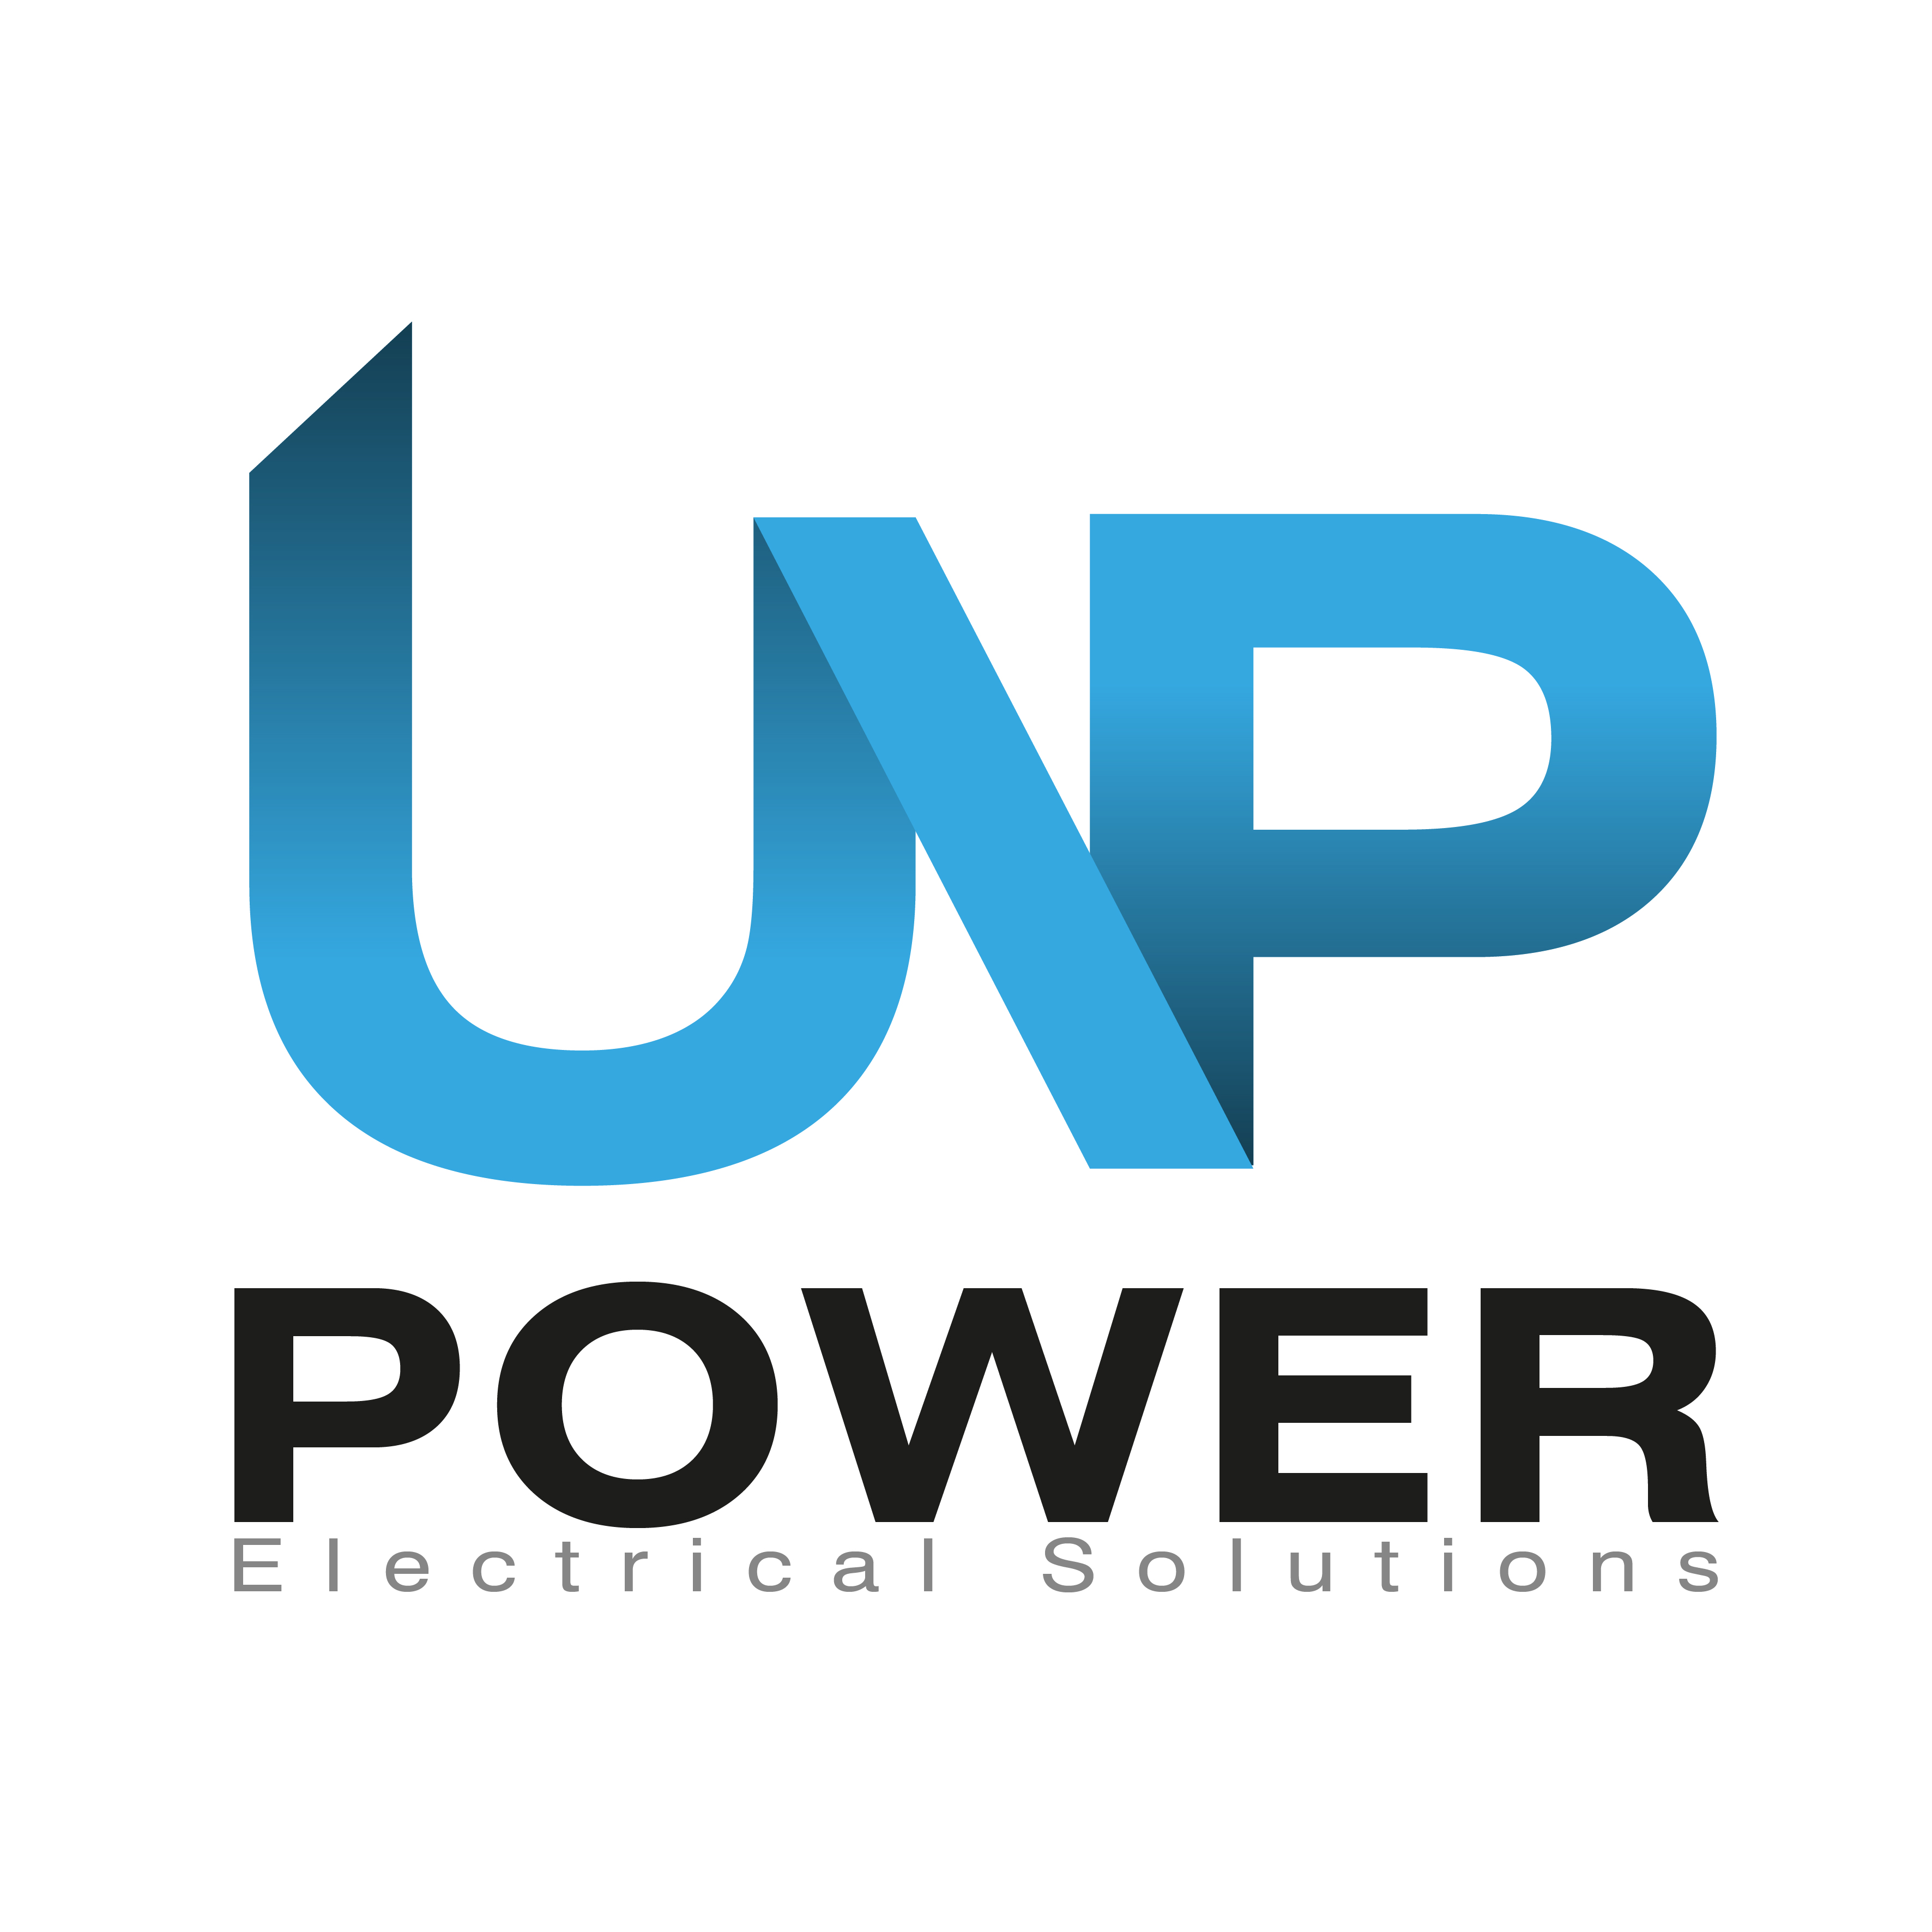 Up power company